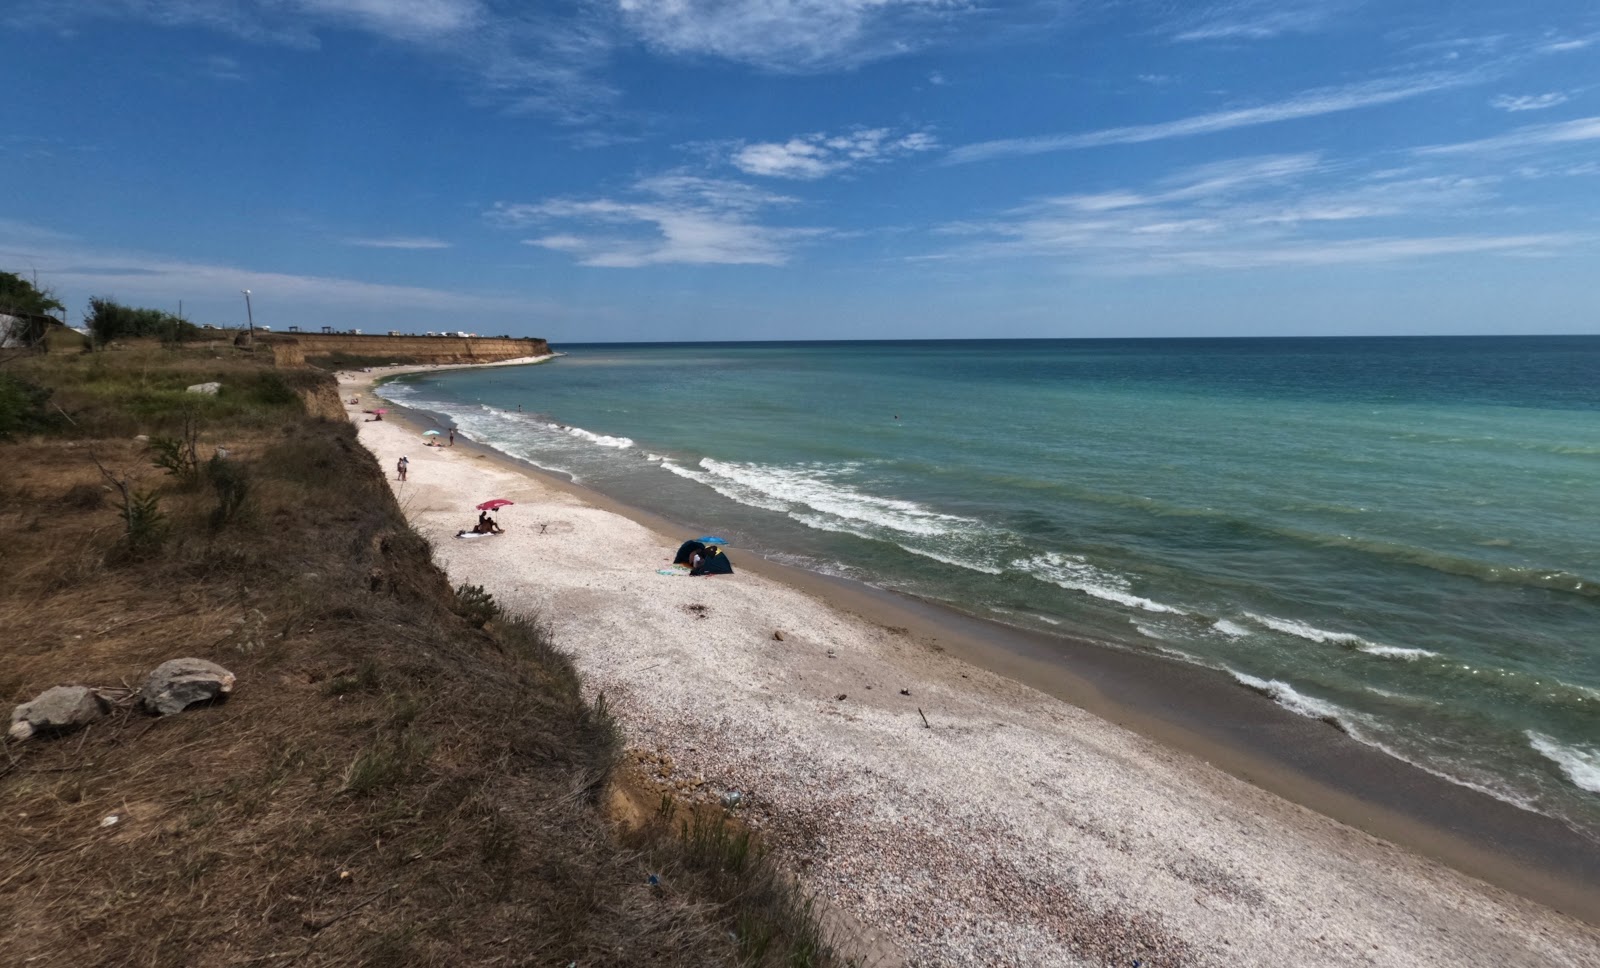 Plyazh Pescarus'in fotoğrafı geniş plaj ile birlikte